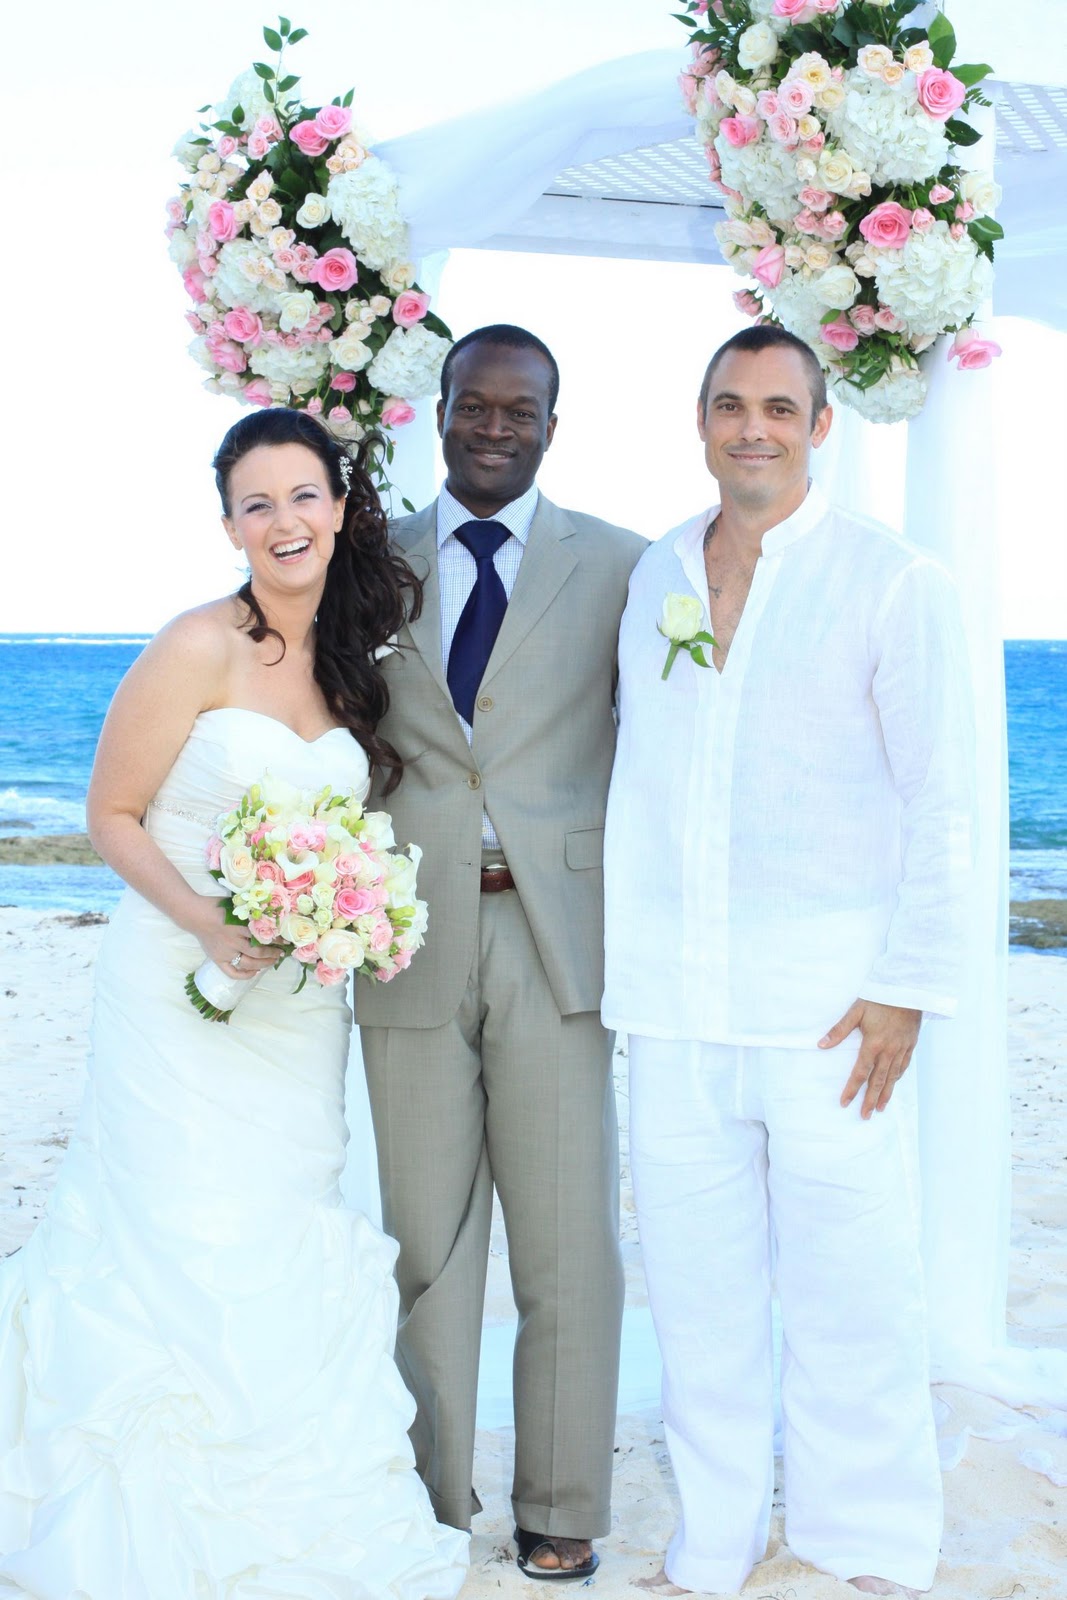 As a Bahamas Beach Wedding